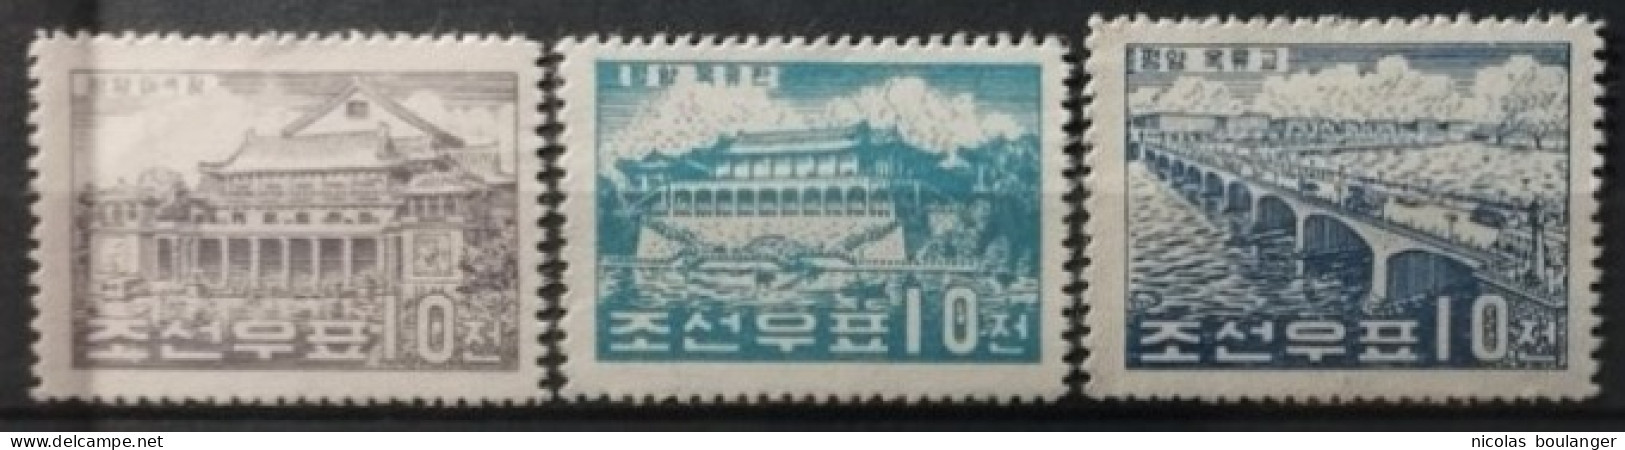 Corée Du Nord 1960 / Yvert N°235-237 / ** (sans Gomme) - Corea Del Norte